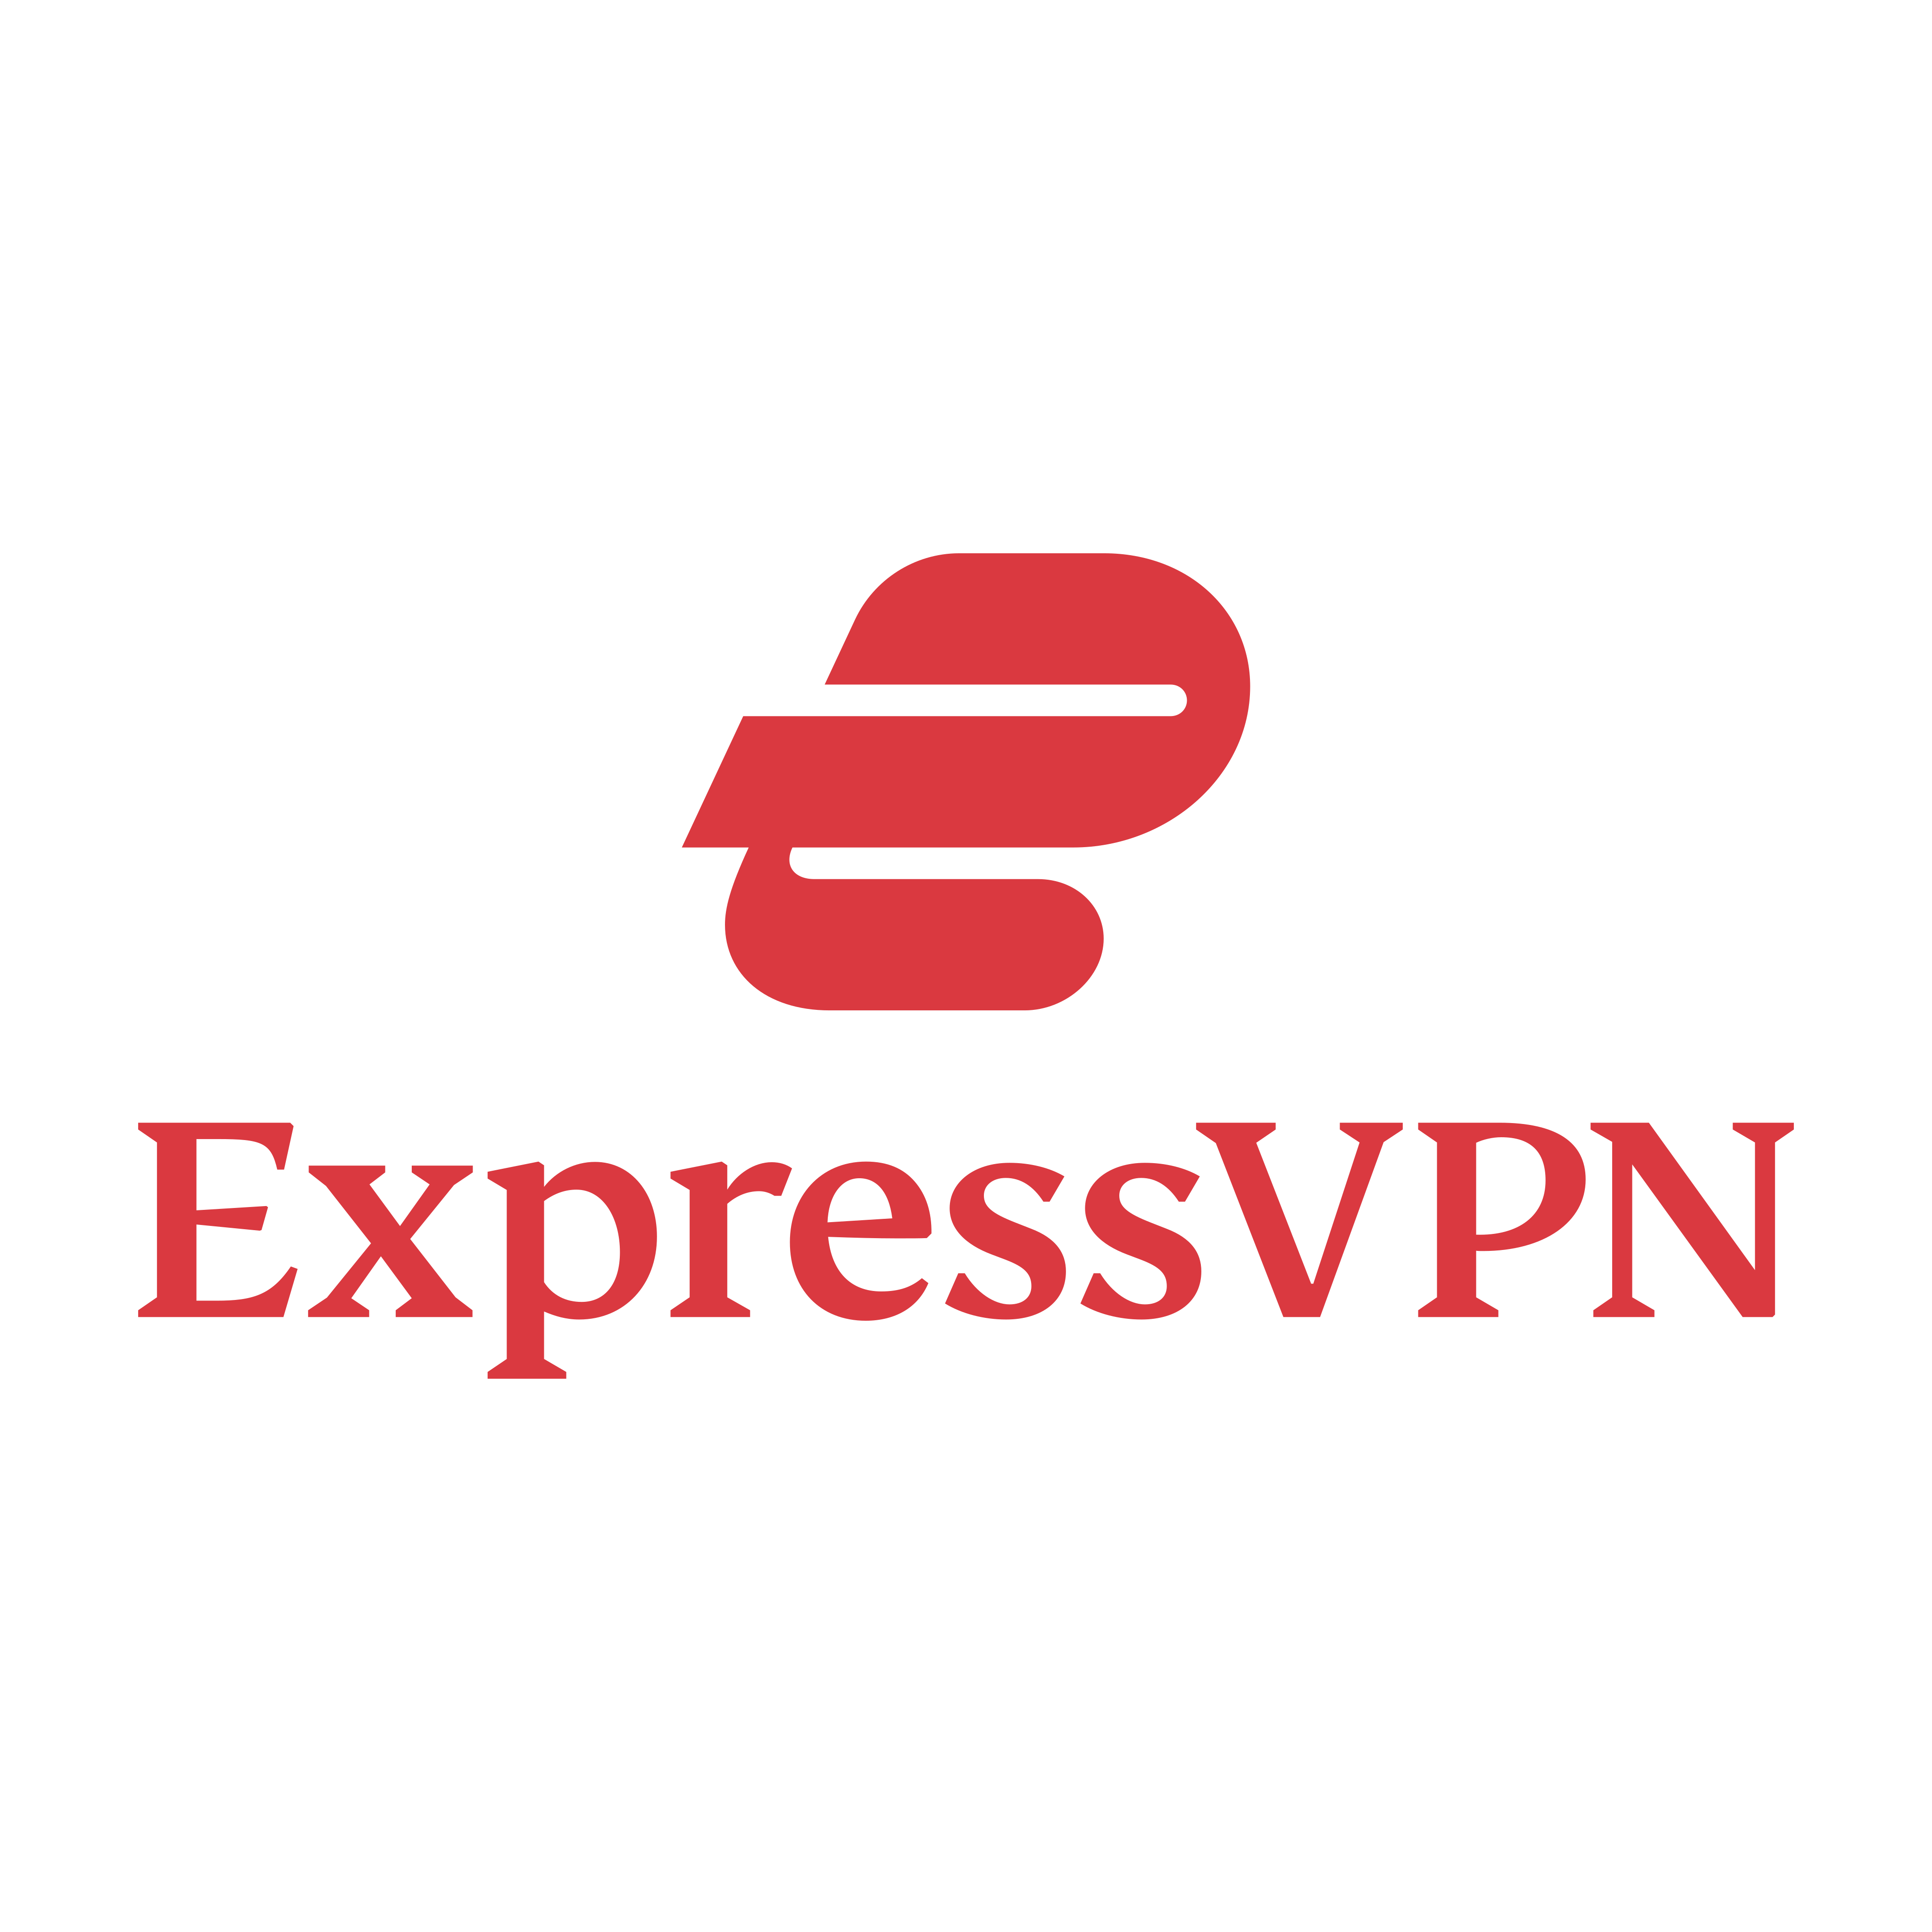 ExpressVPN Logo PNG.